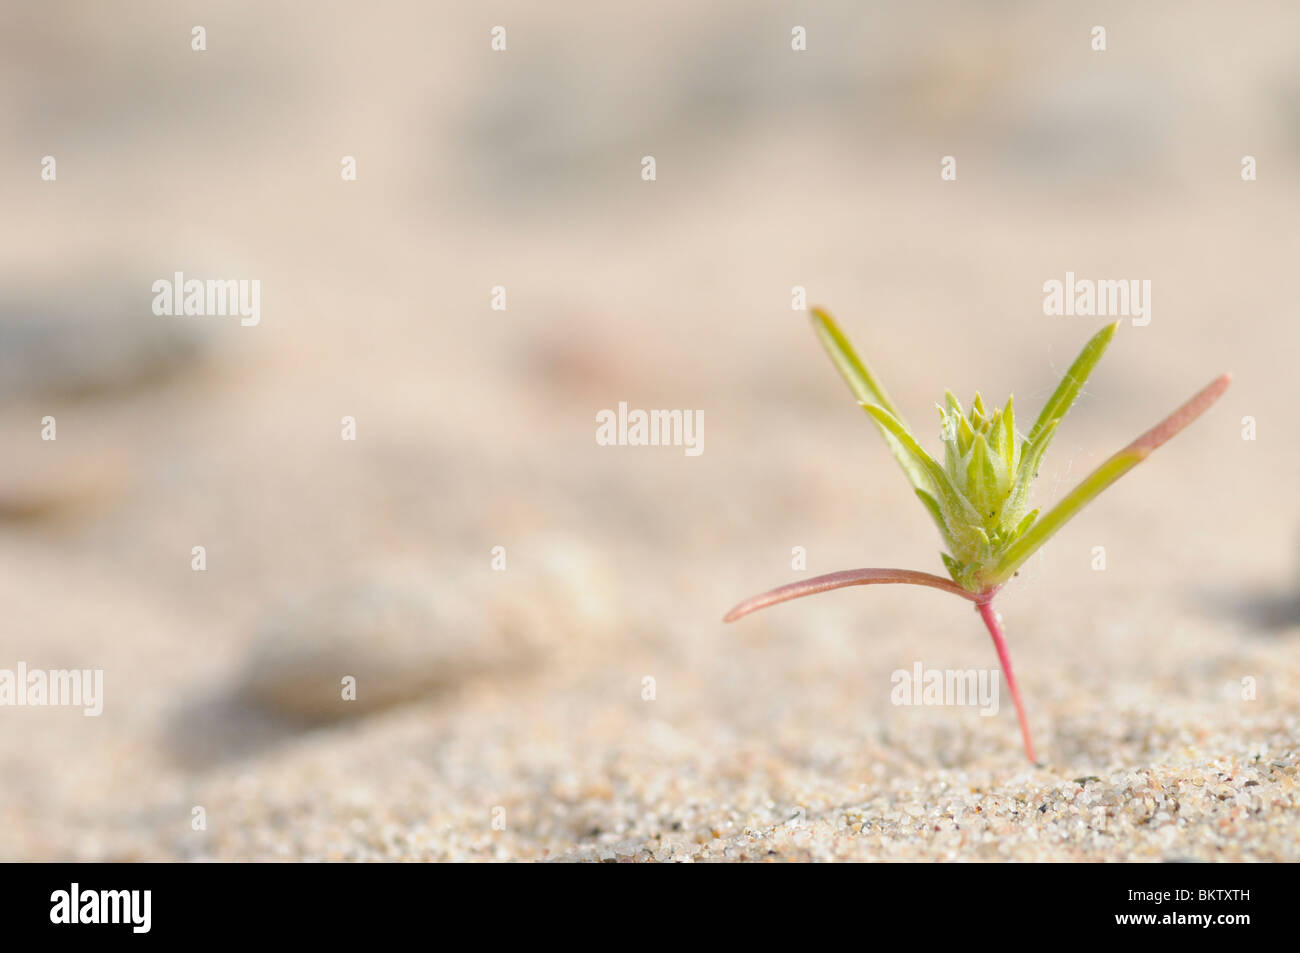 Kiemplant van Smal Vlieszaad op een zandstrandje van de Rijn; Young plant of Siberian bugseed growing on a sandy beach of the river Rhine Stock Photo